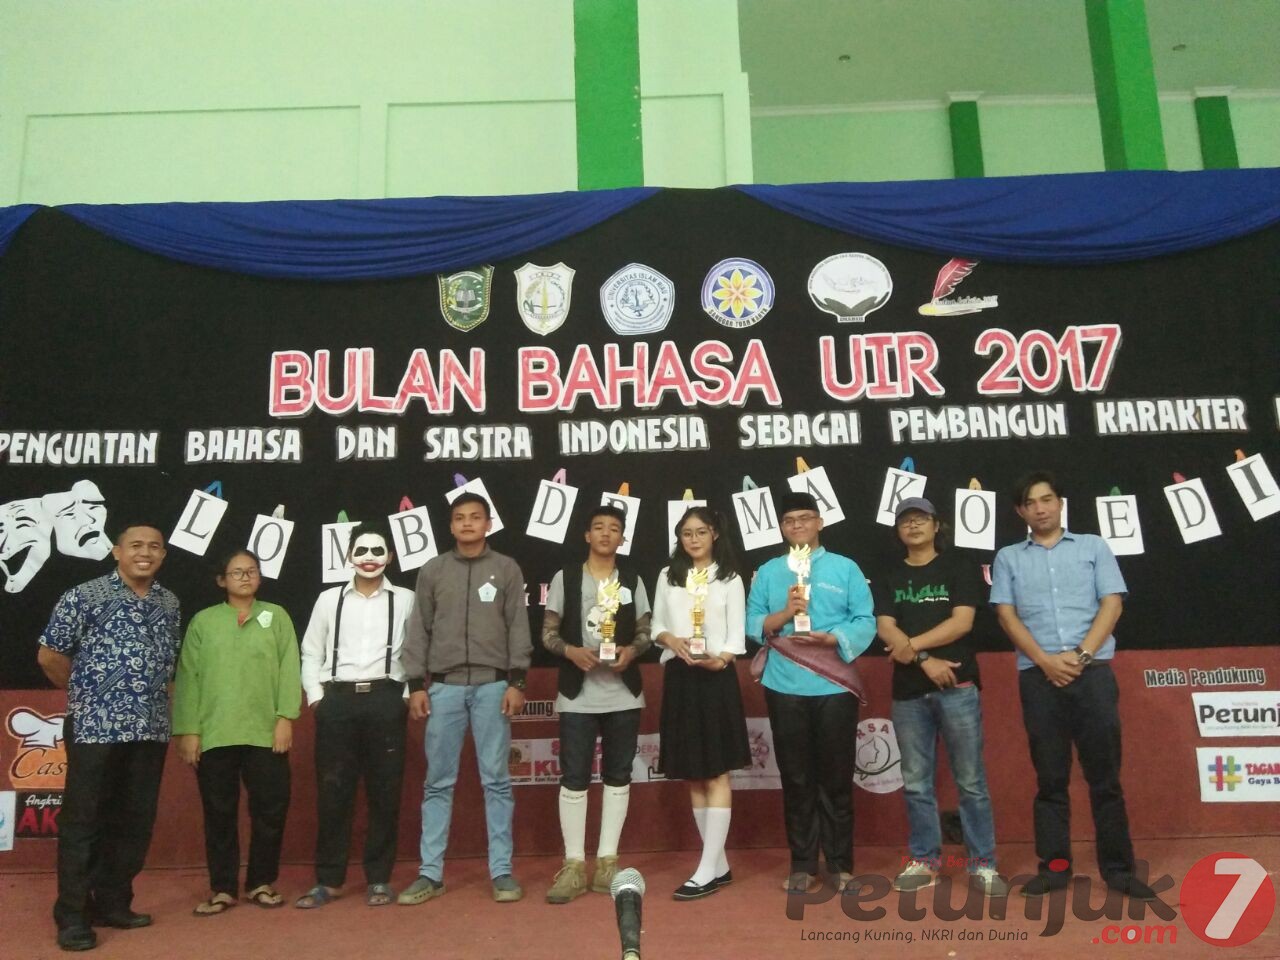 BB UIR 2017, SMAN 7 Pekanbaru Raih Juara 1 Lomba Drama Komedi